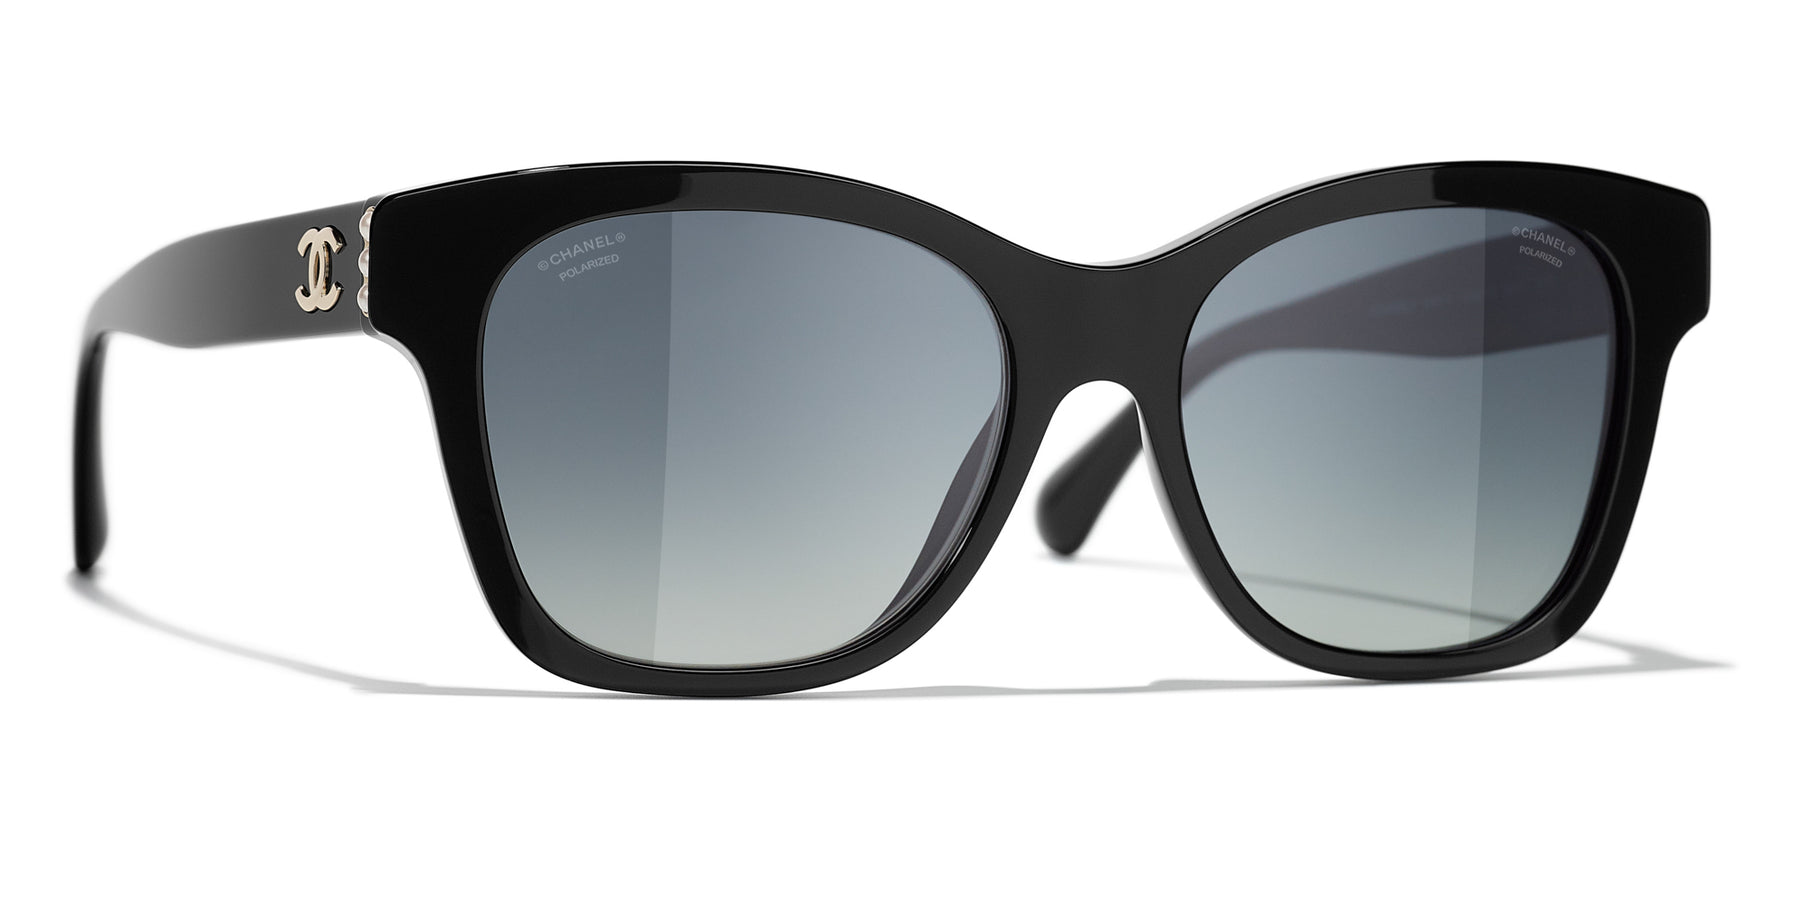 Sunglasses: Square Sunglasses, acetate & metal — Fashion